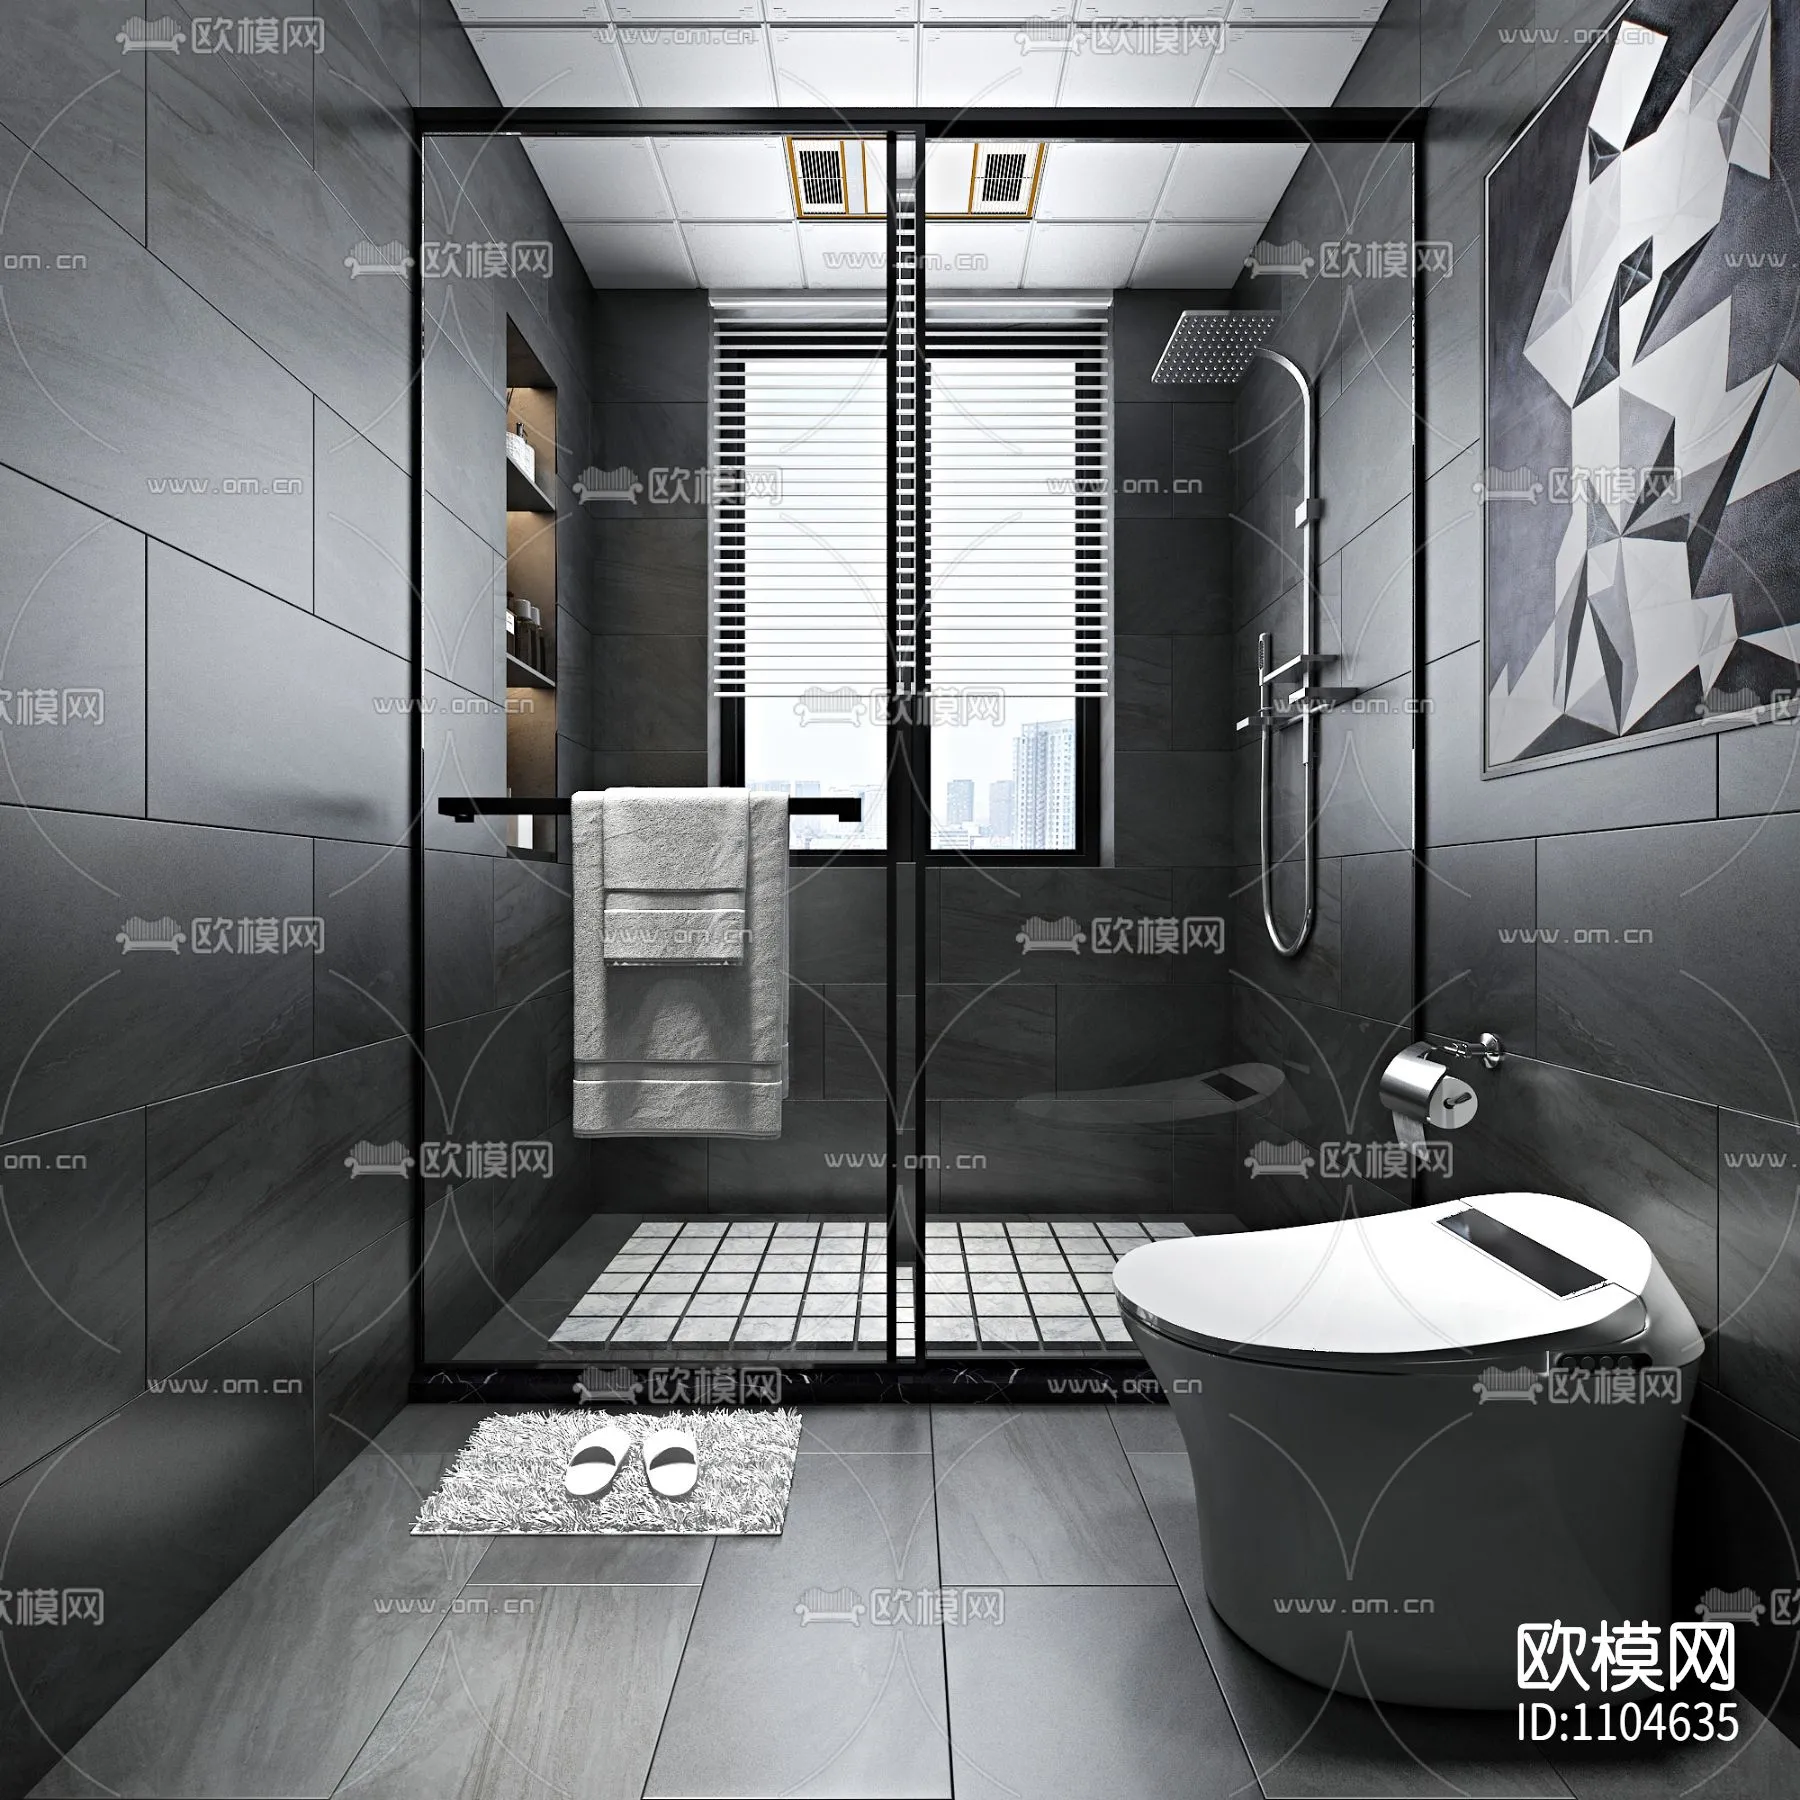 Bathroom 3D Scenes – 0097